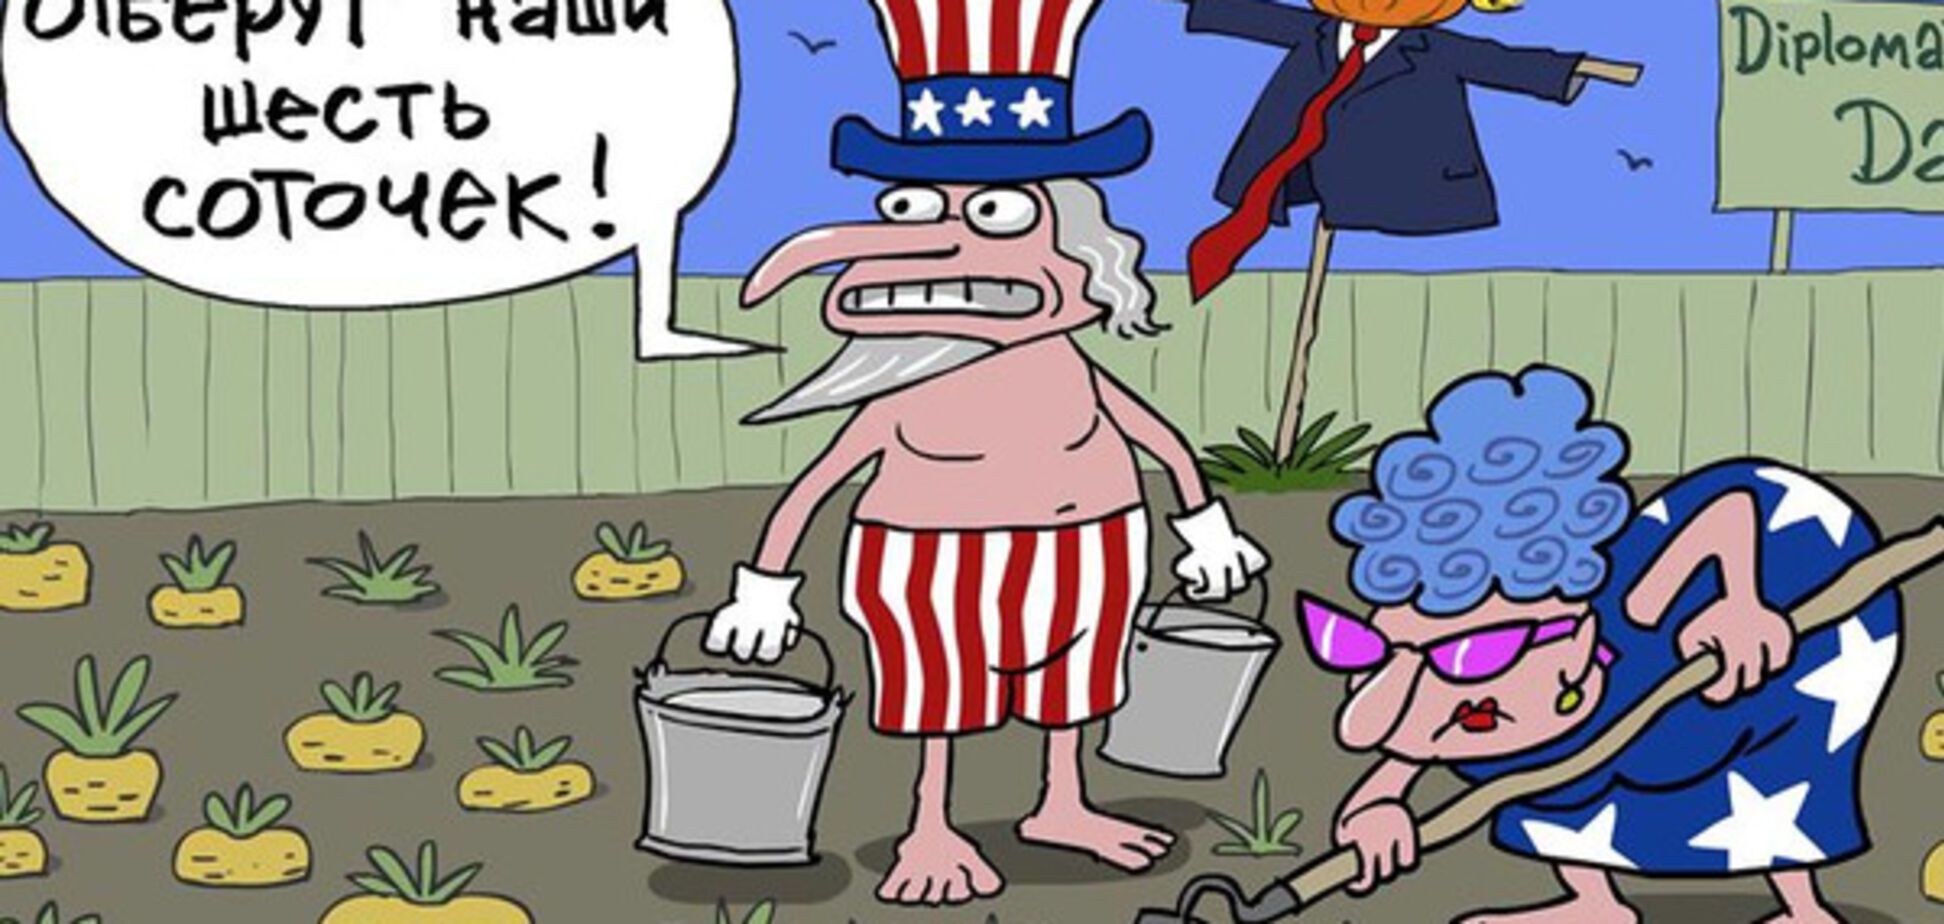 'Отберут шесть соток': карикатурист потроллил 'дачные' санкции России против США